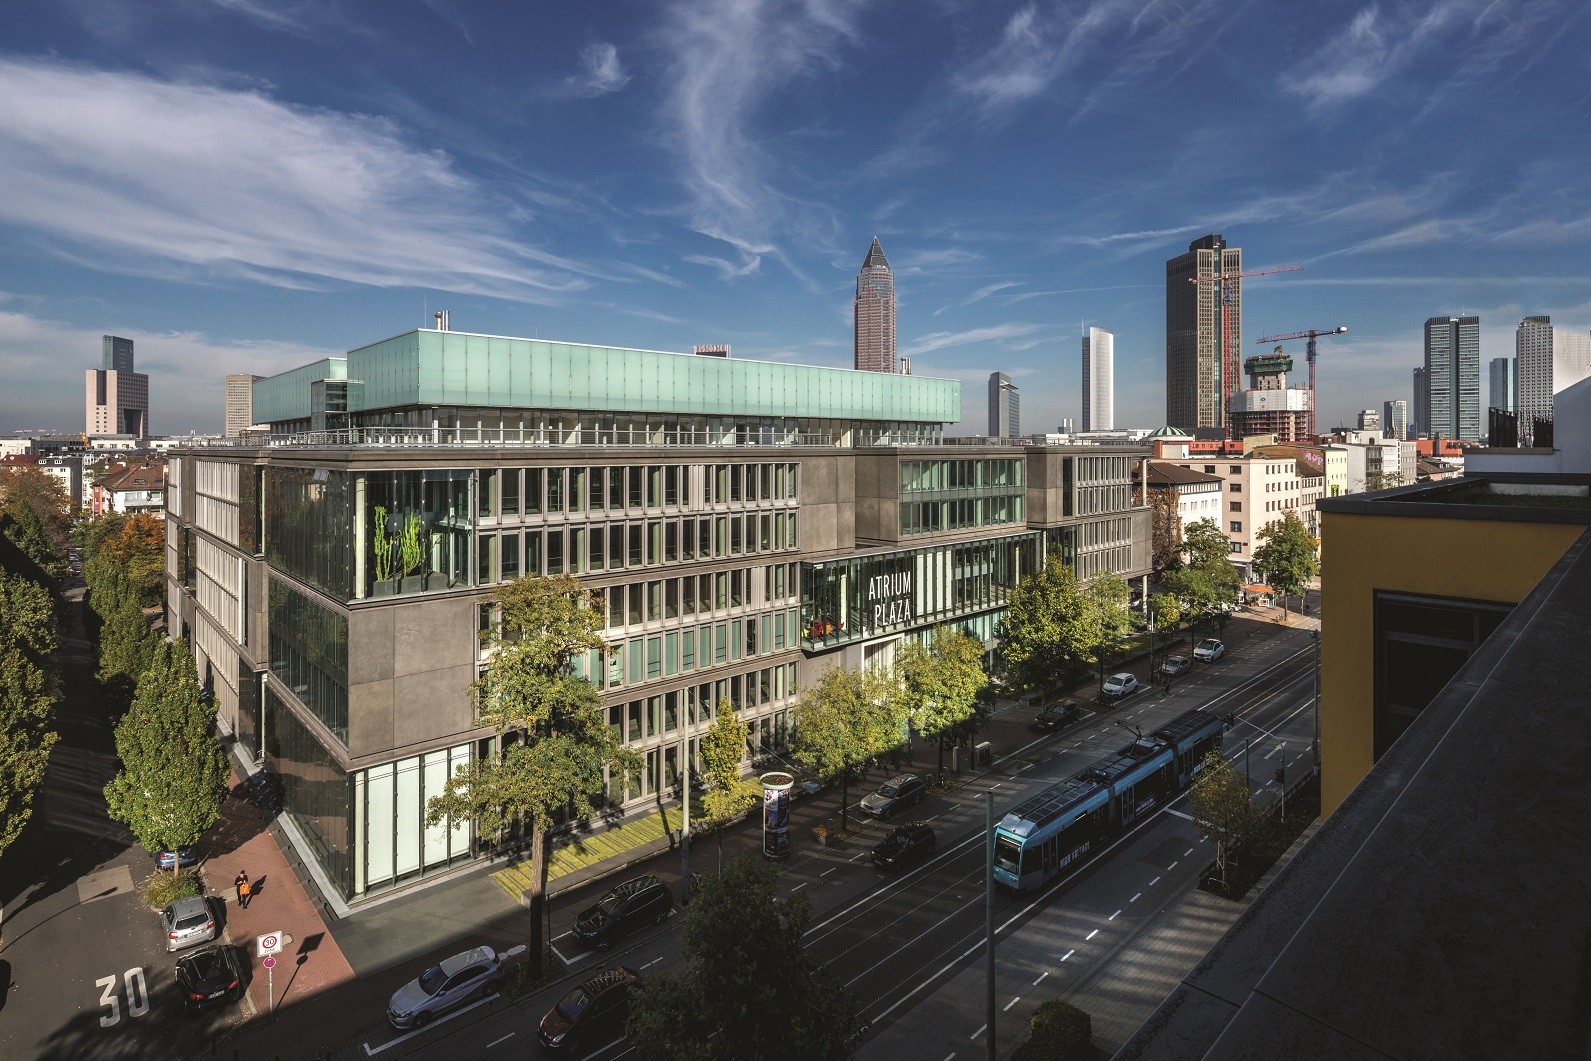 RS Unternehmensbild das das Bürogebäude in Deutschland in mitten einer Stadt zeigt.